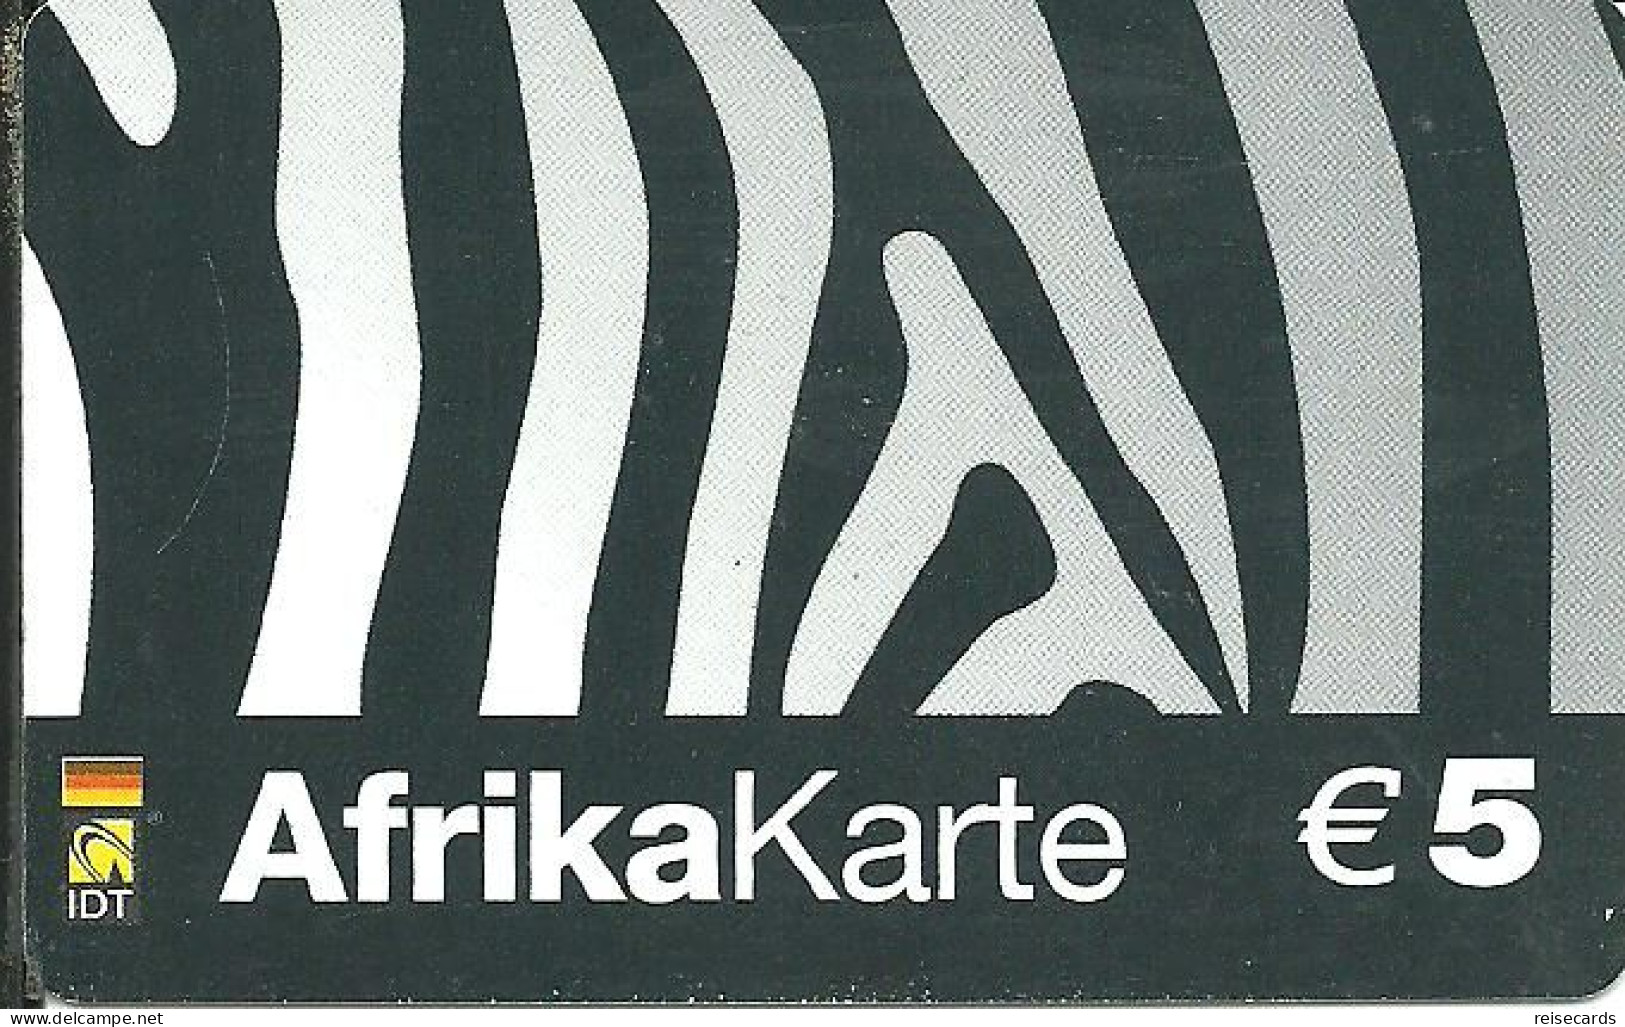 Germany: Prepaid IDT Afrika Karte 03.05 - GSM, Cartes Prepayées & Recharges